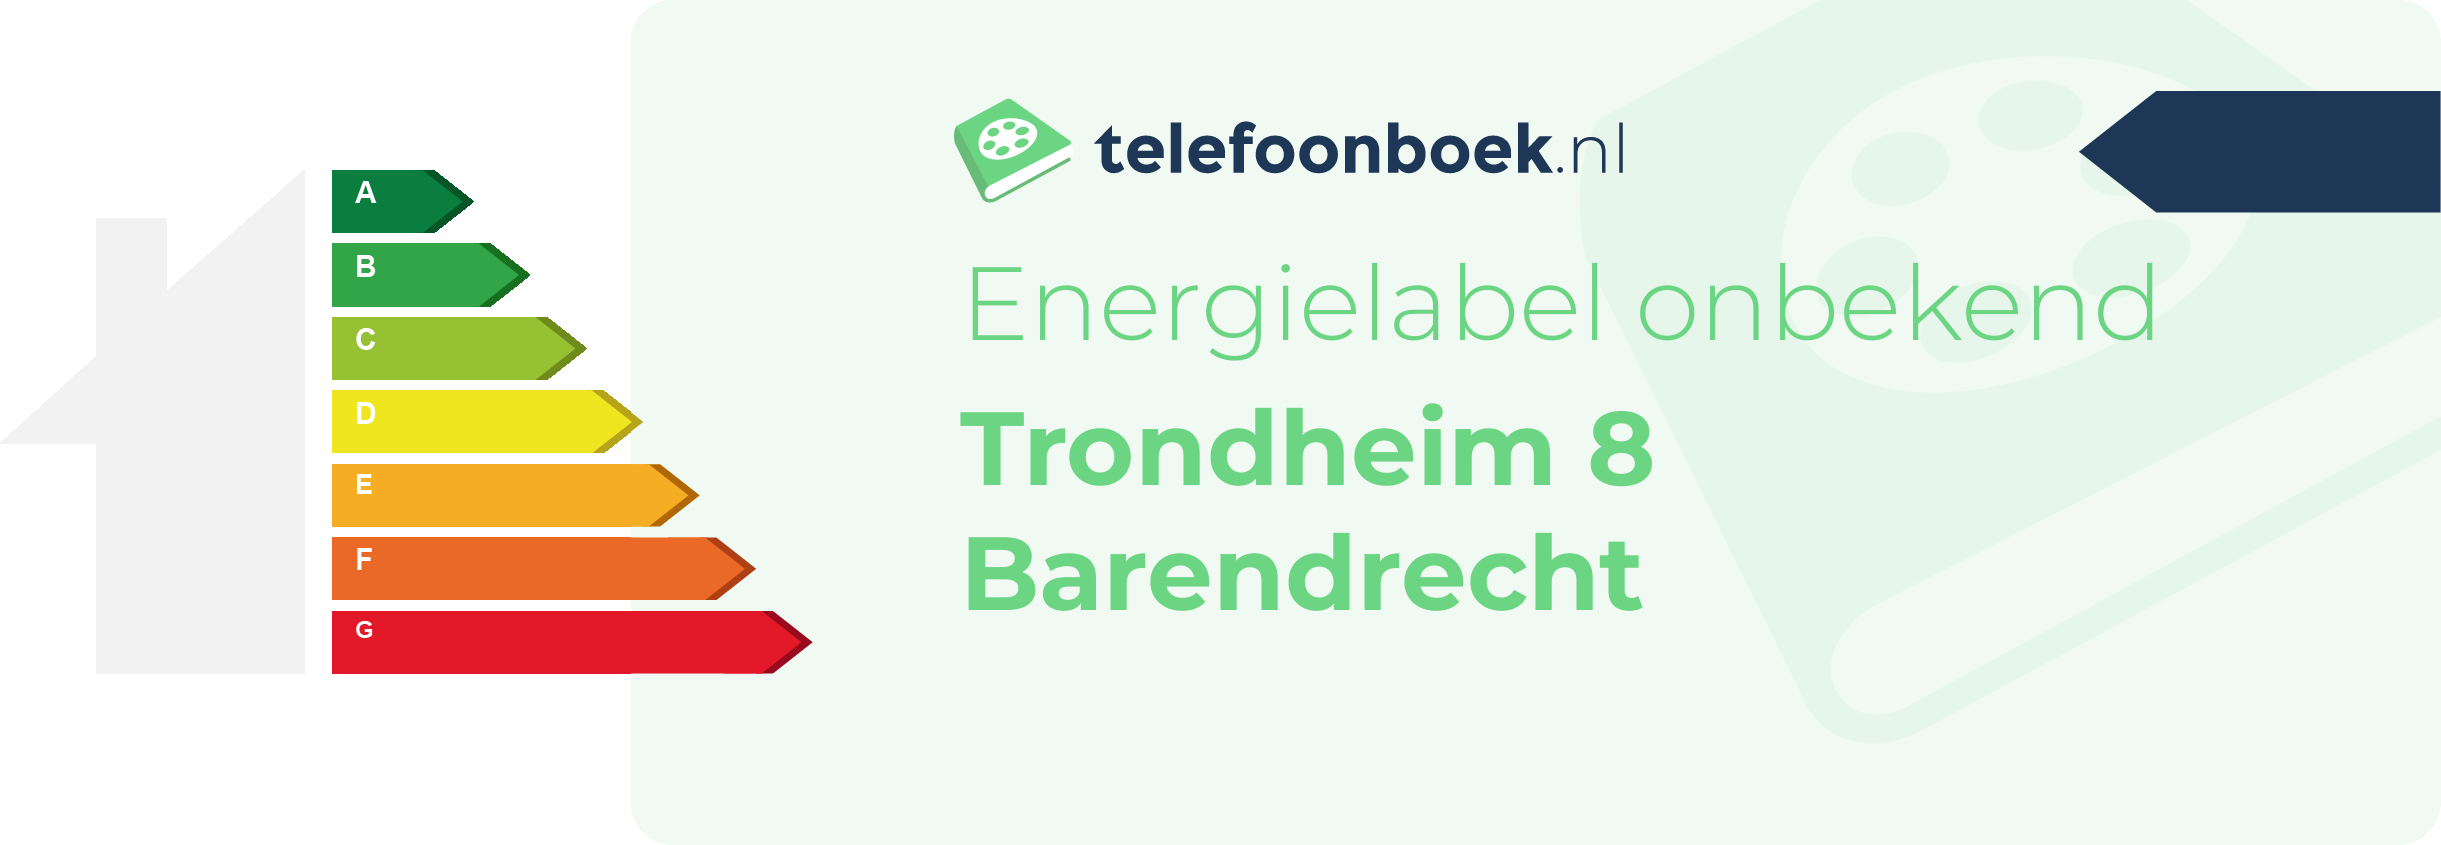 Energielabel Trondheim 8 Barendrecht